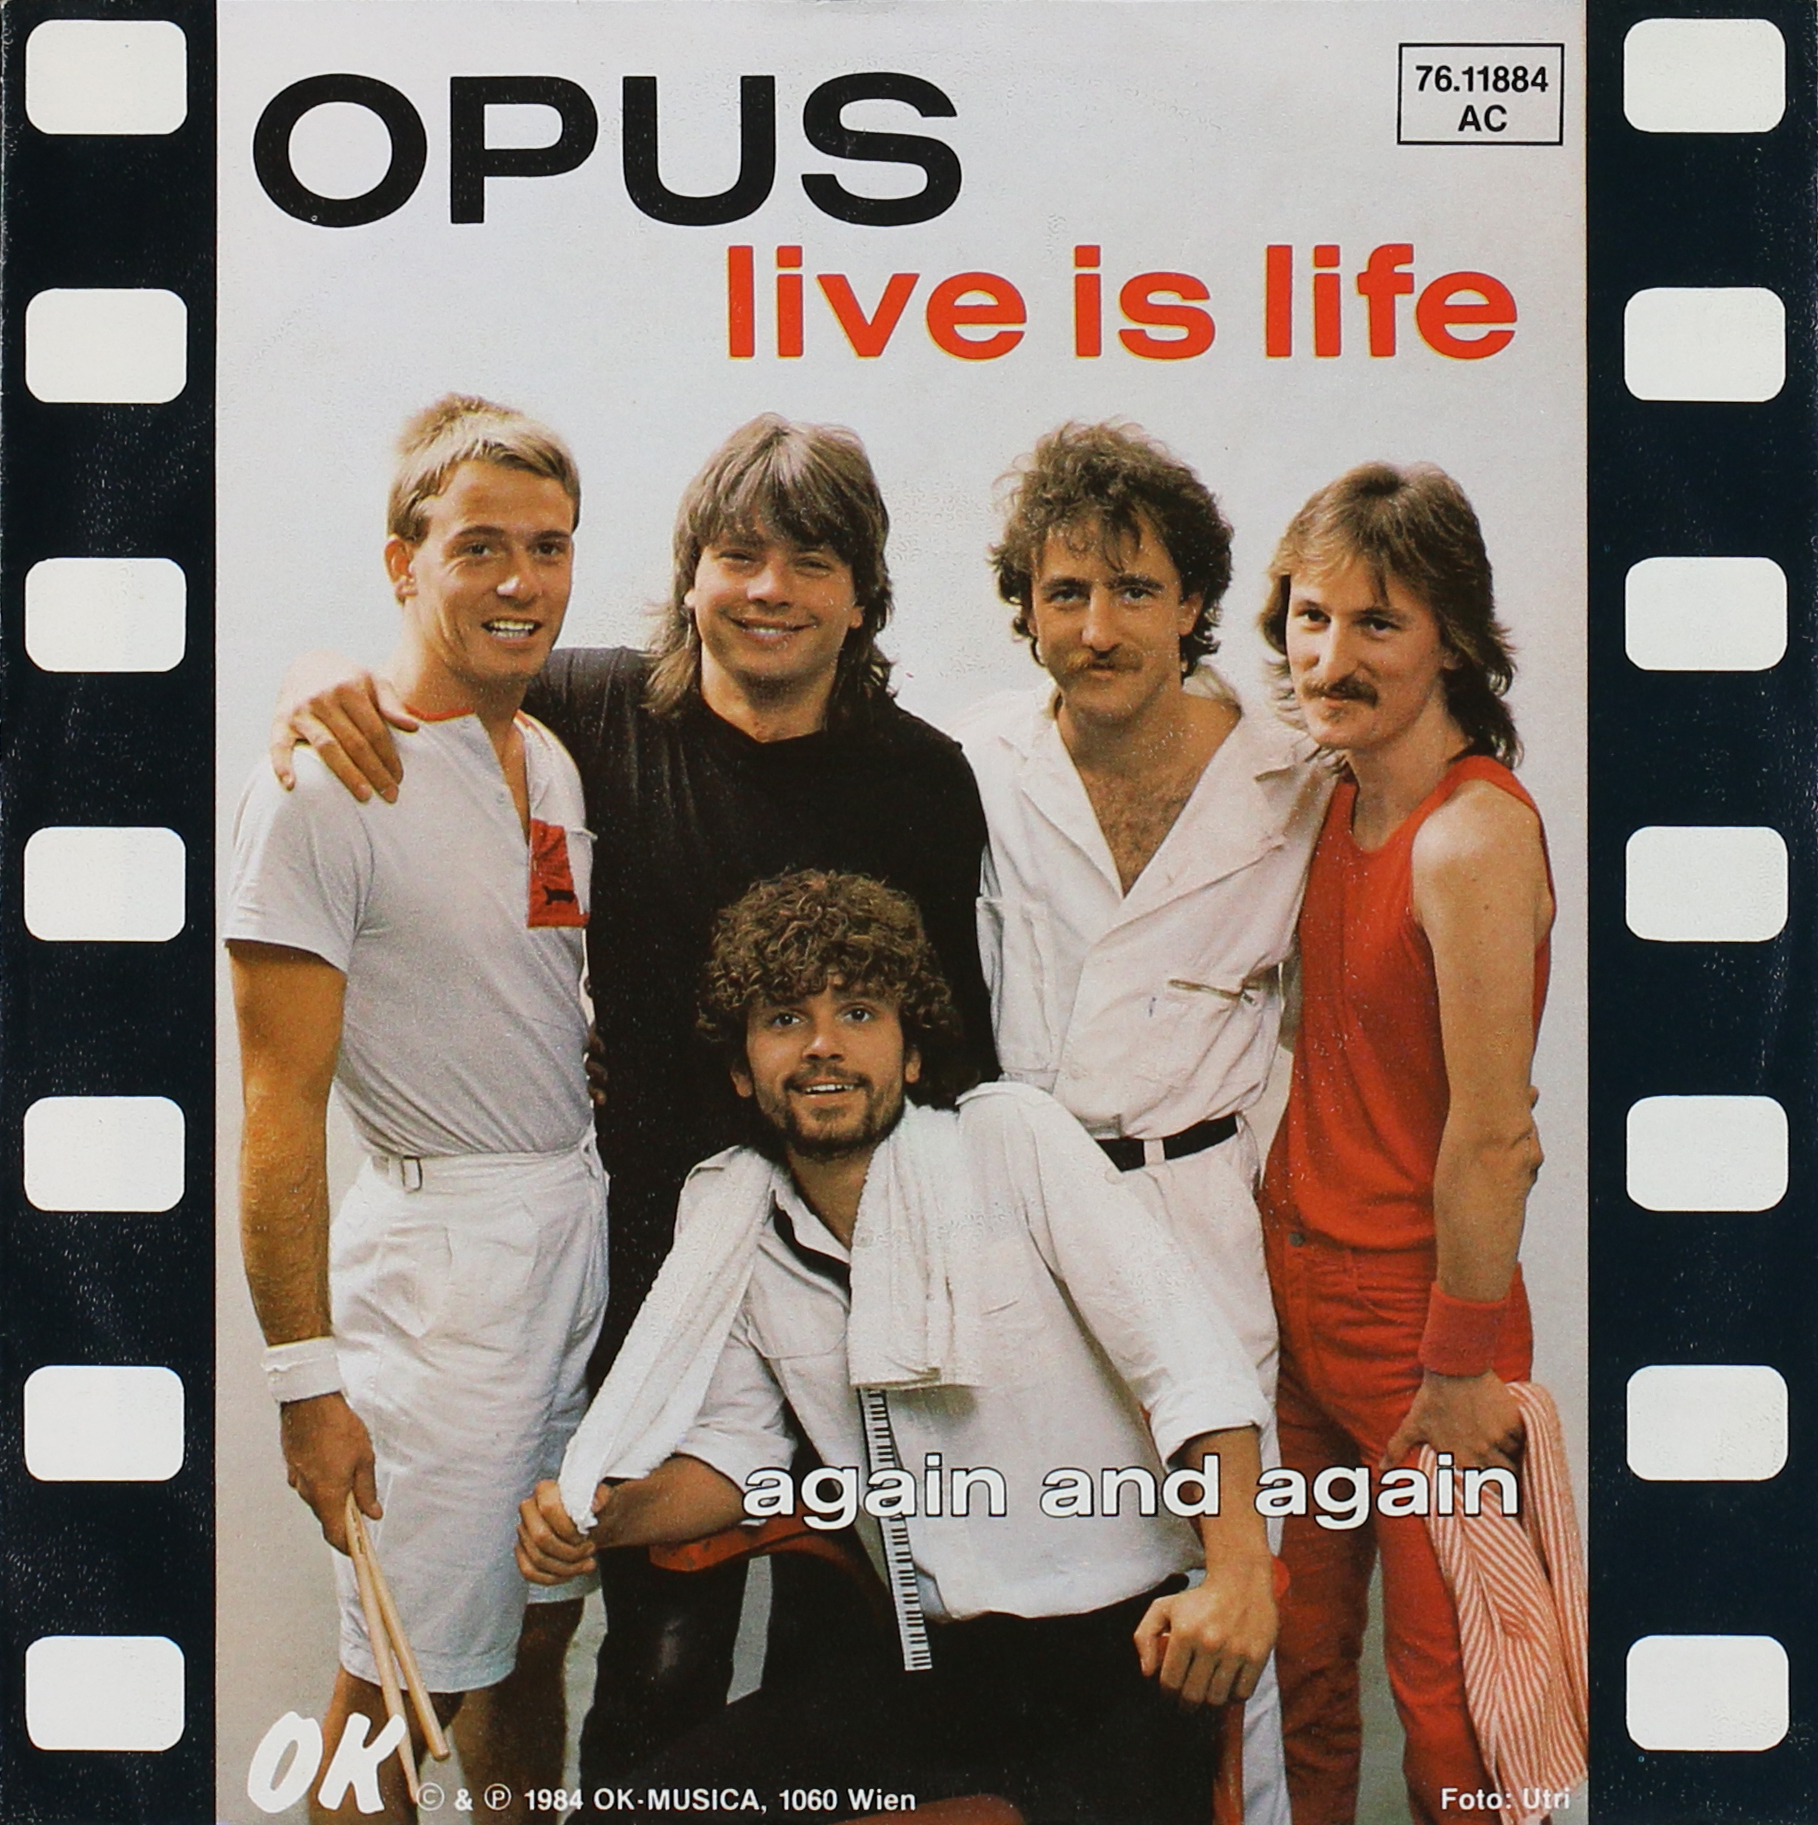 Песни группы life. Группа опус Life is Life. Opus Live is Life обложка. Opus альбомы. Opus, Opus Live is Life обложка.